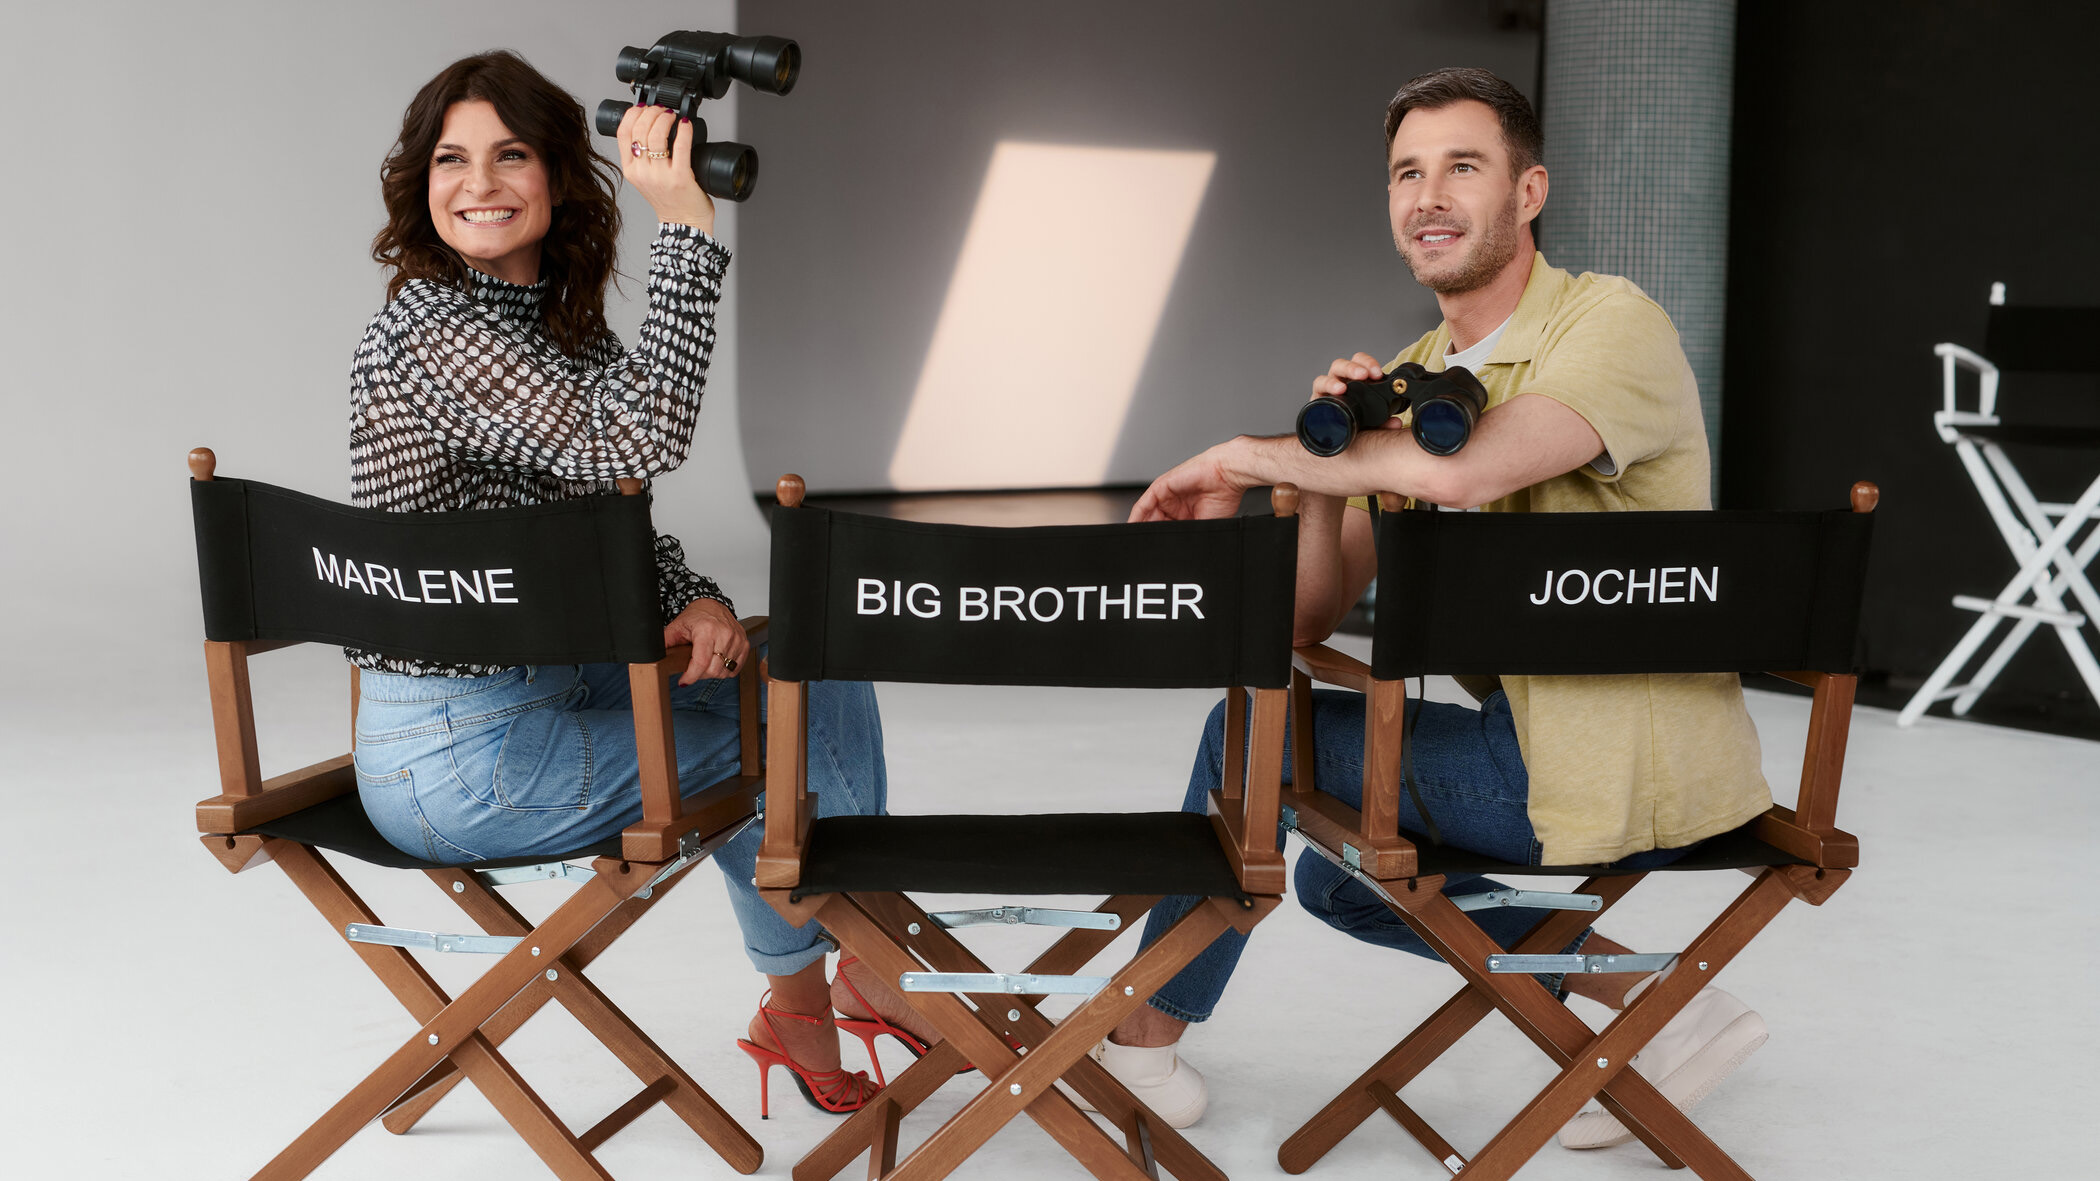 Promi Big Brother 2021 Start mit Marlene und Jochen